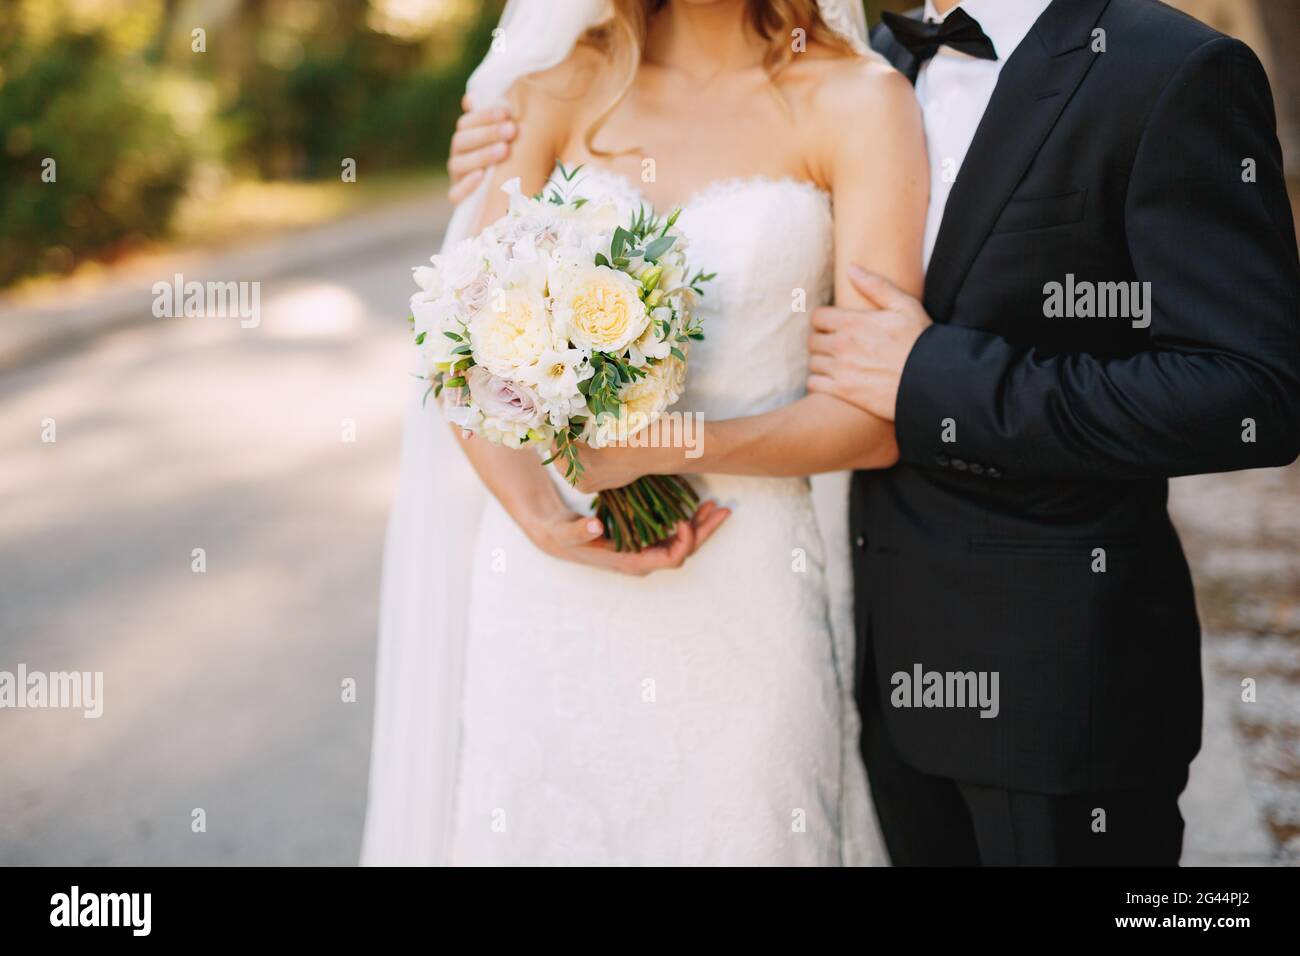 Der Bräutigam umarmt die Schultern der Braut, die einen Hochzeitsstrauß mit weißen Blumen in der Nähe hält Stockfoto